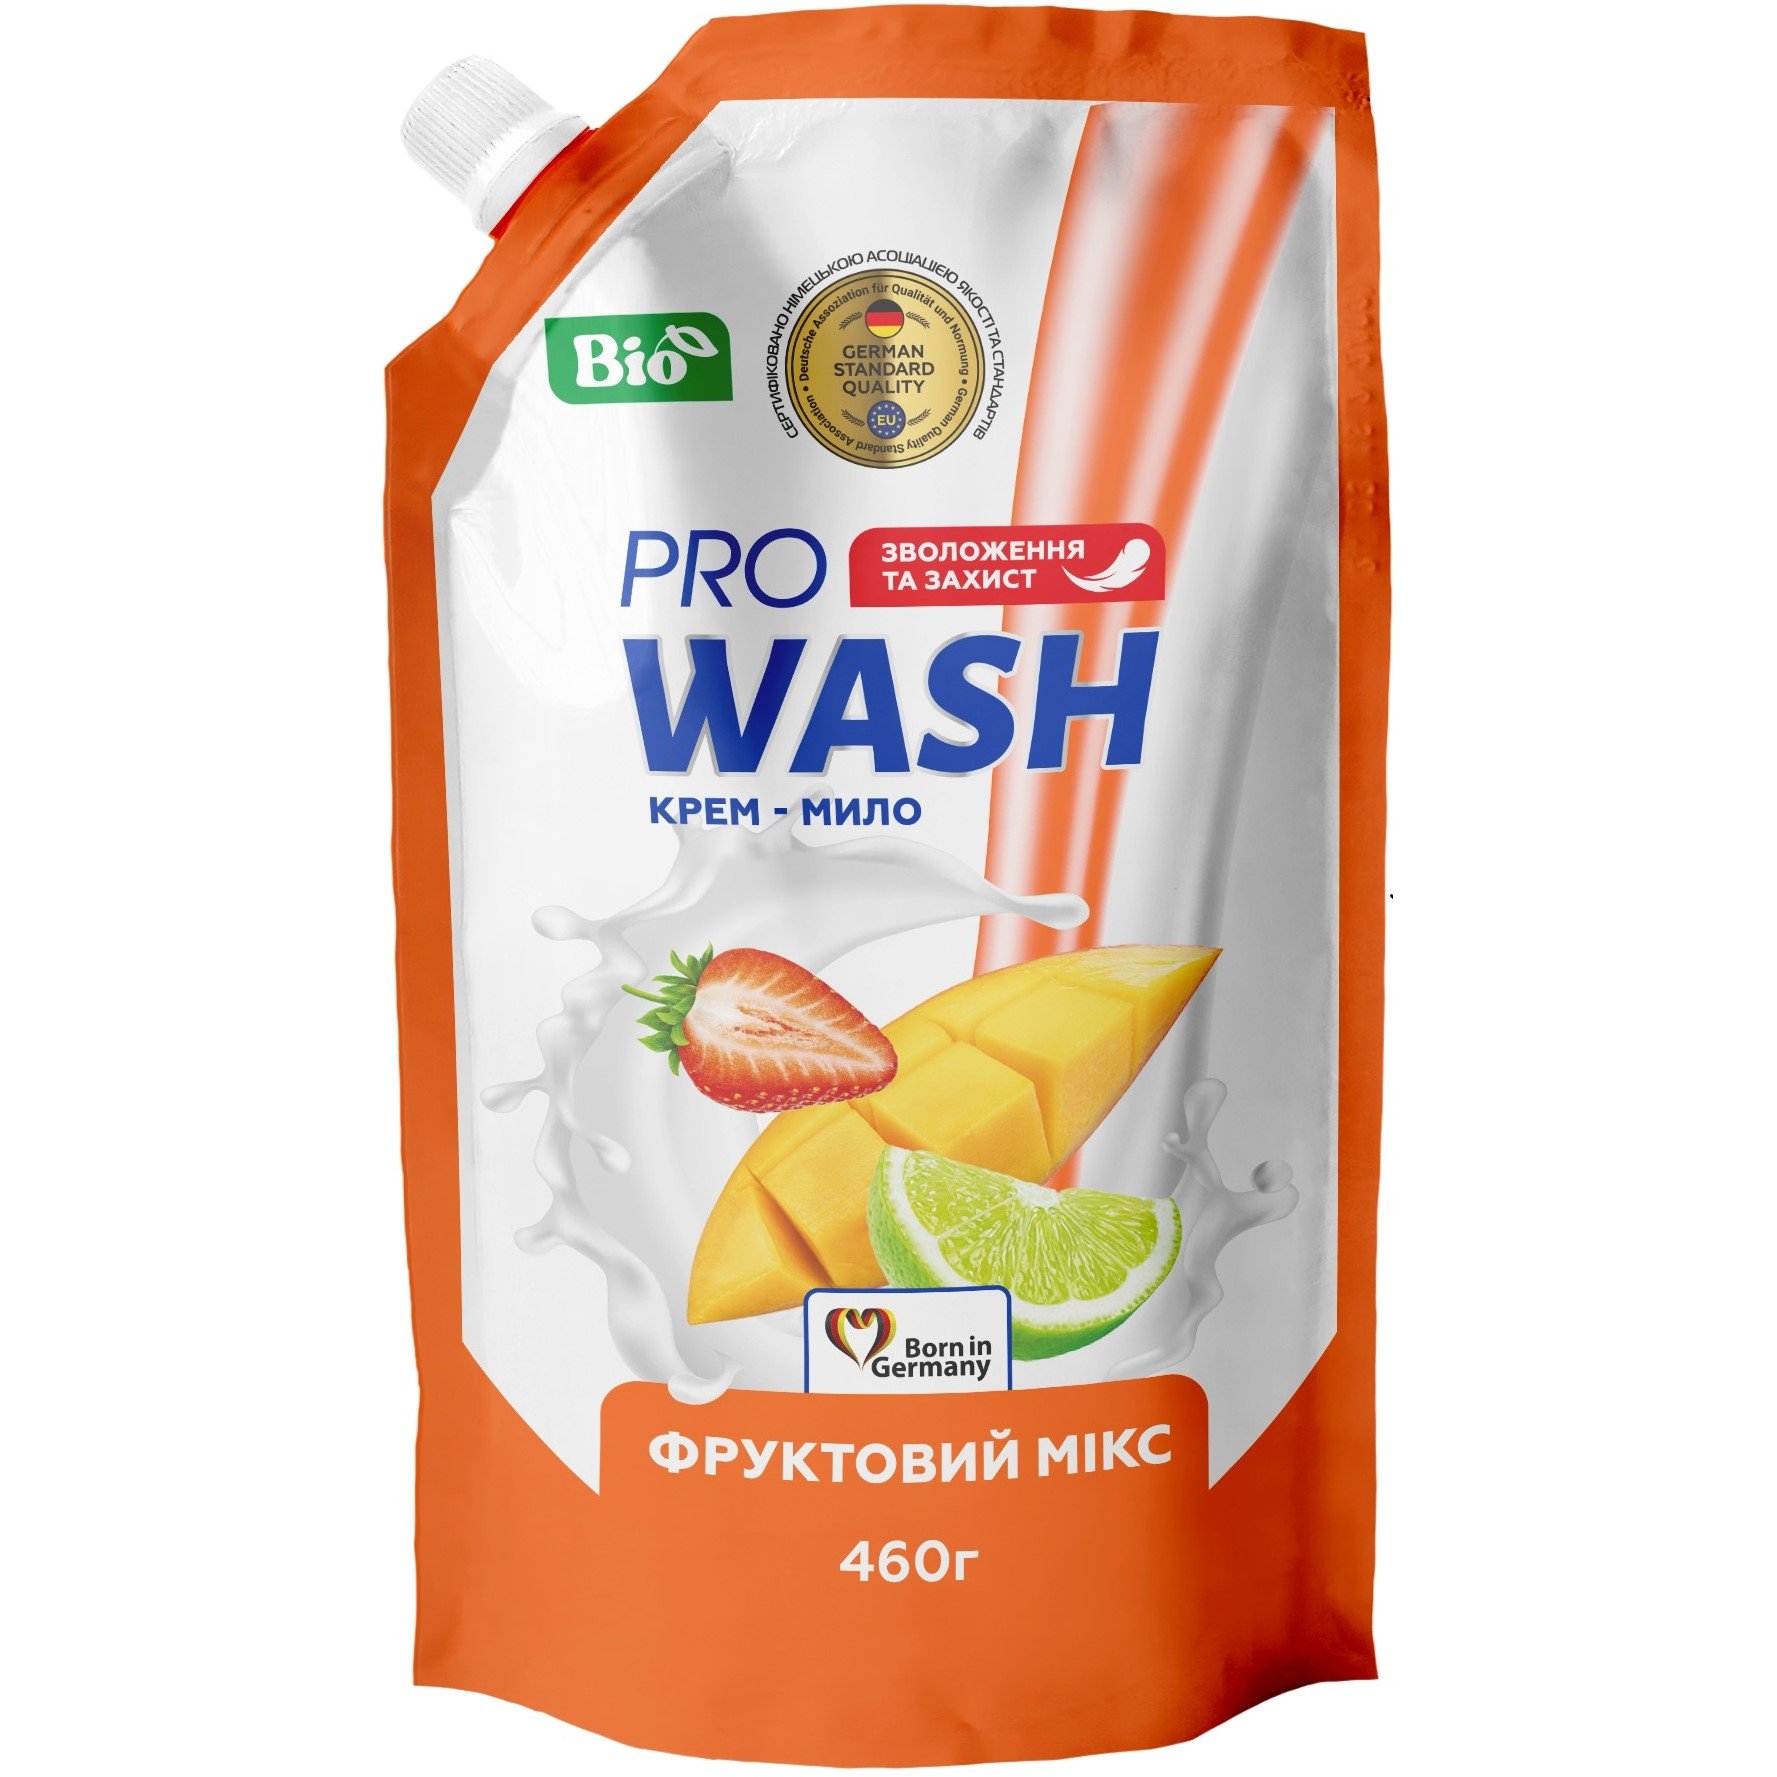 Жидкое крем-мыло Pro Wash, фруктовый микс, 460 г - фото 1